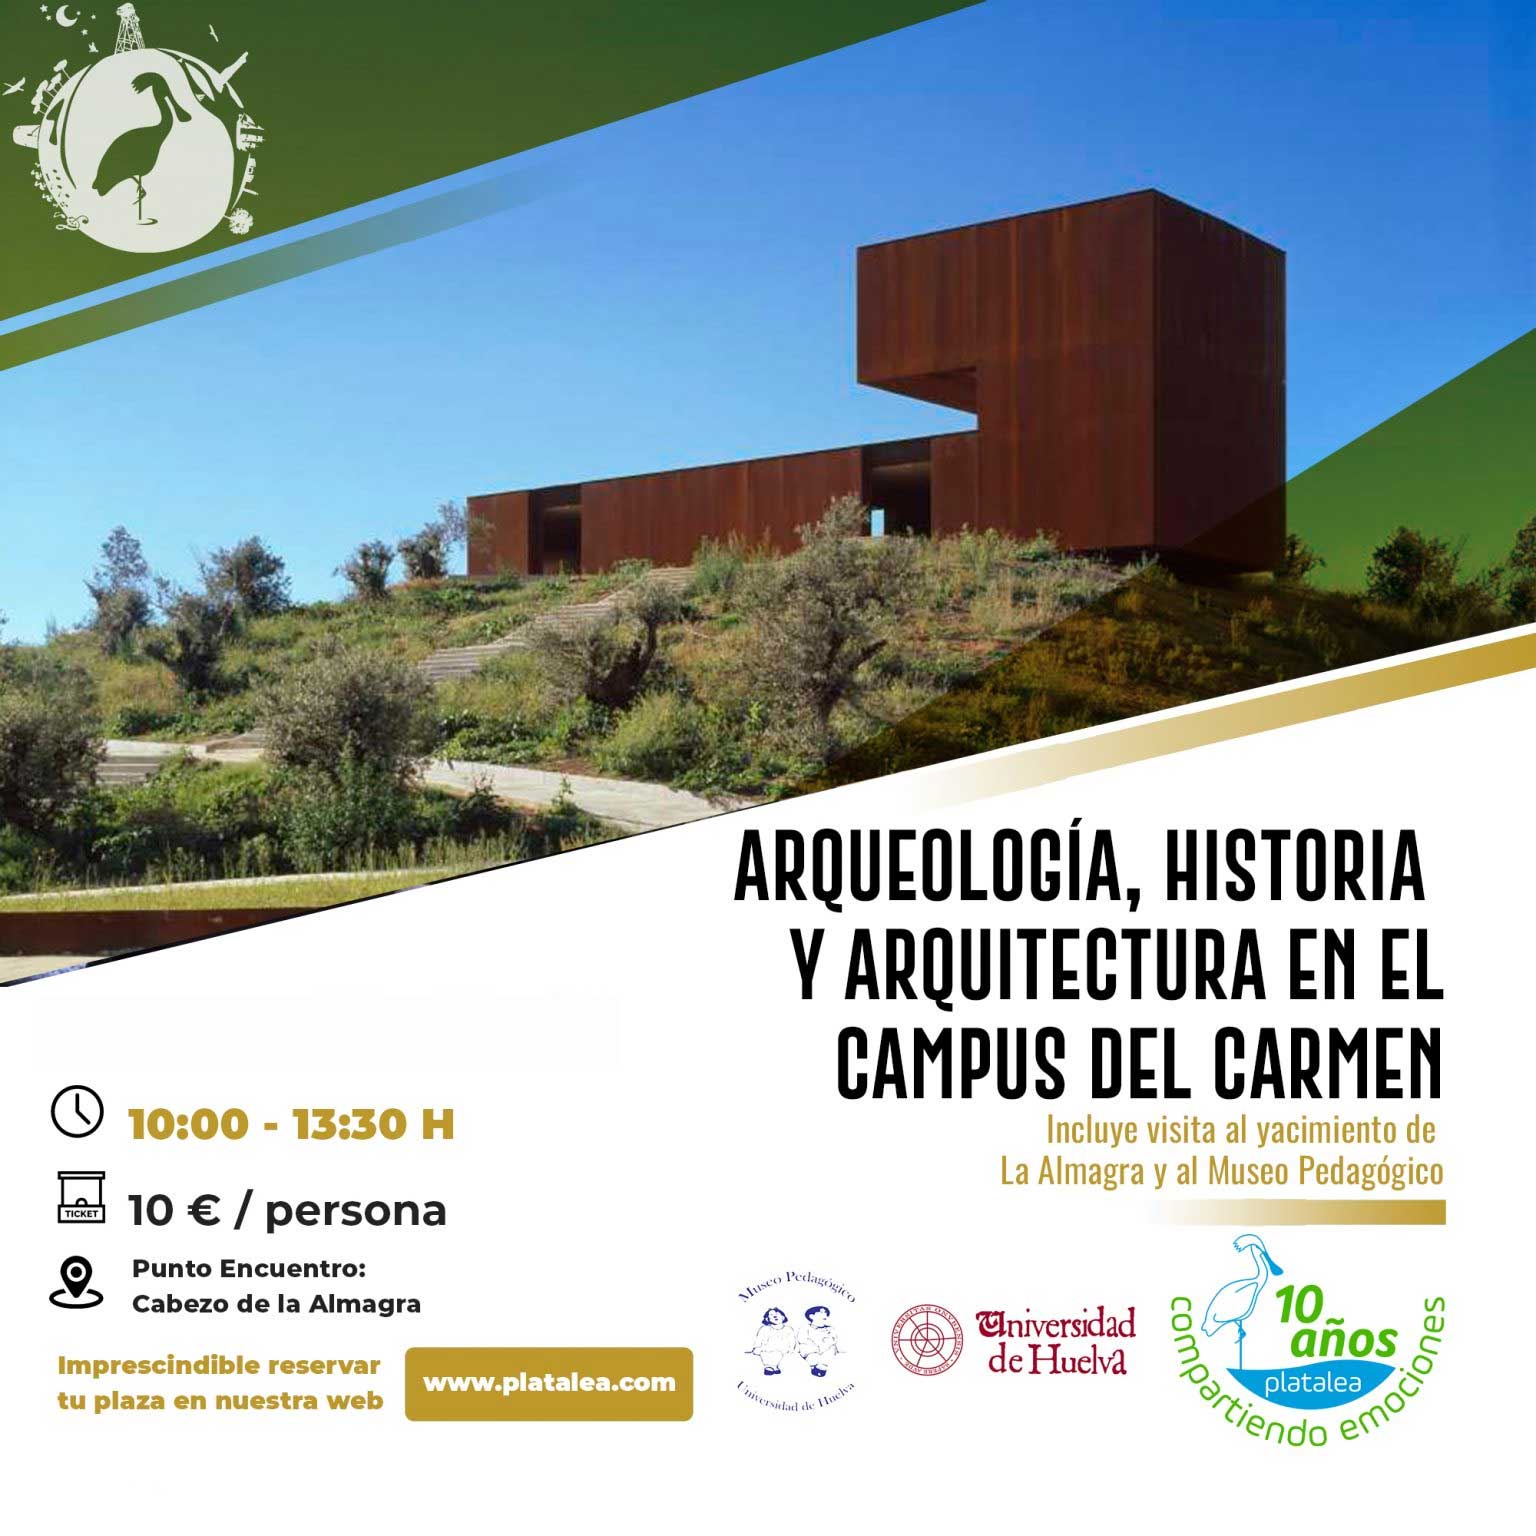 arqueologia historia y arqueologia en el campus del Carmen Huelva